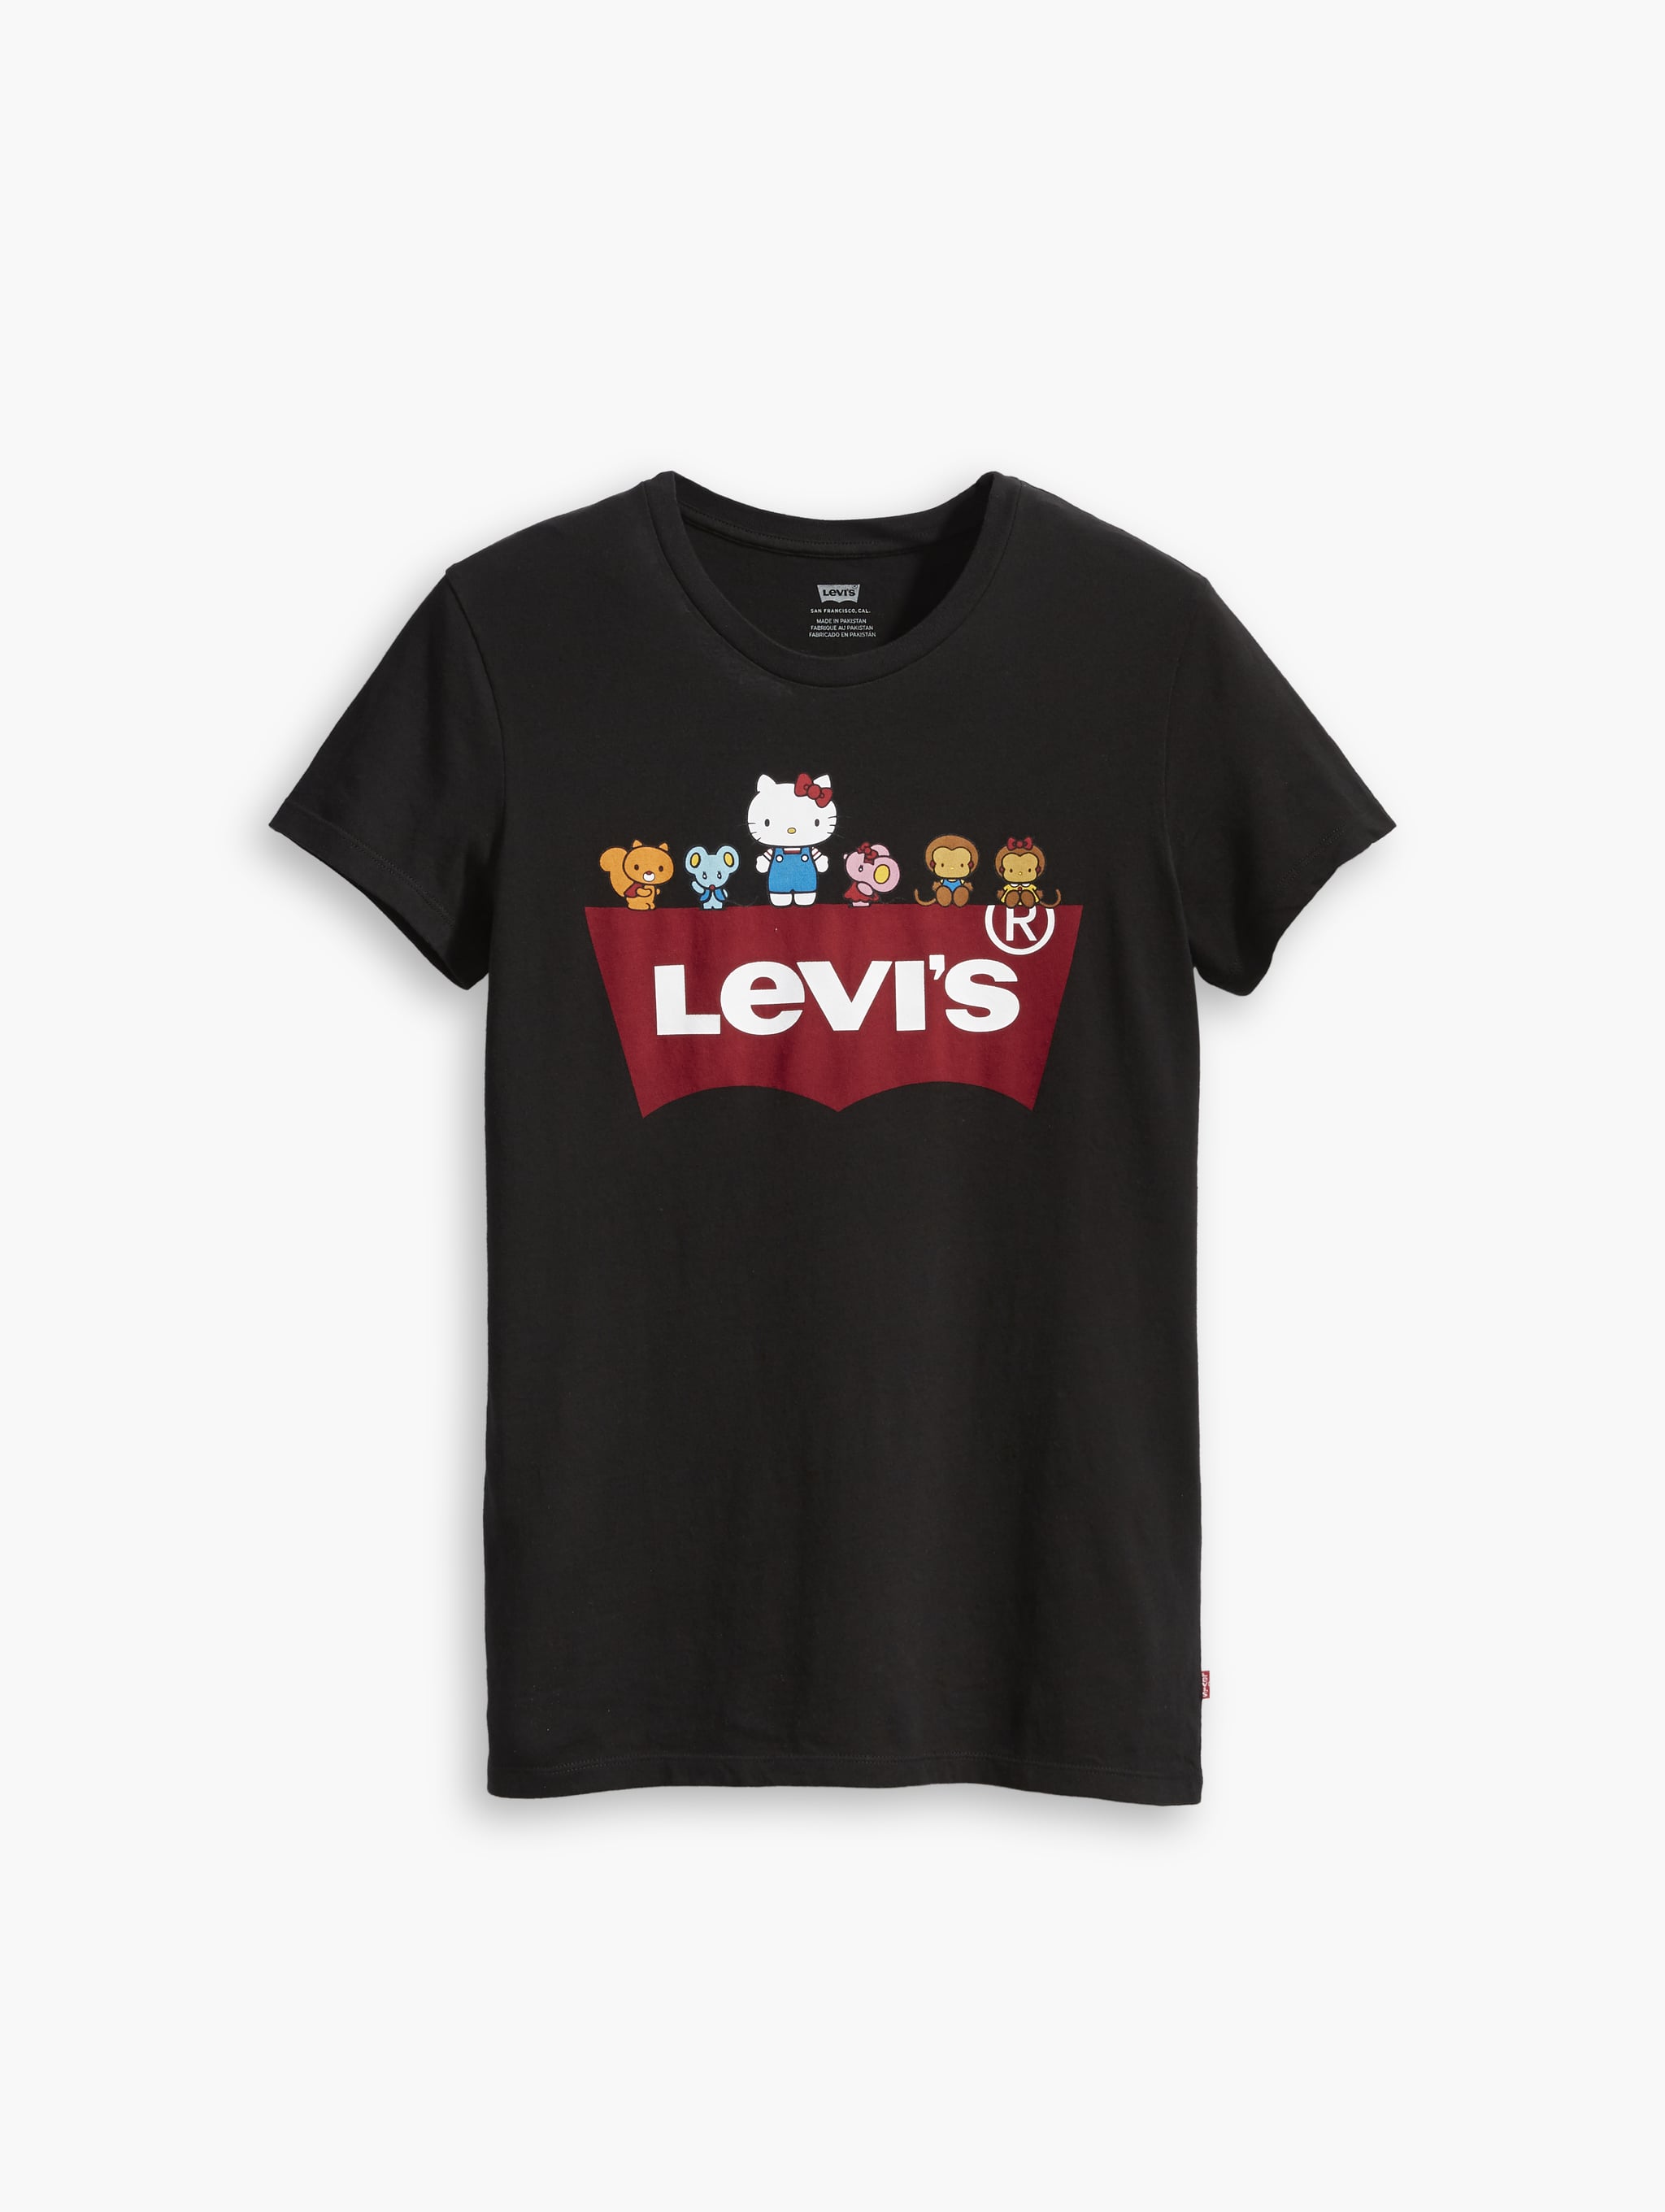 levis shirt 2019